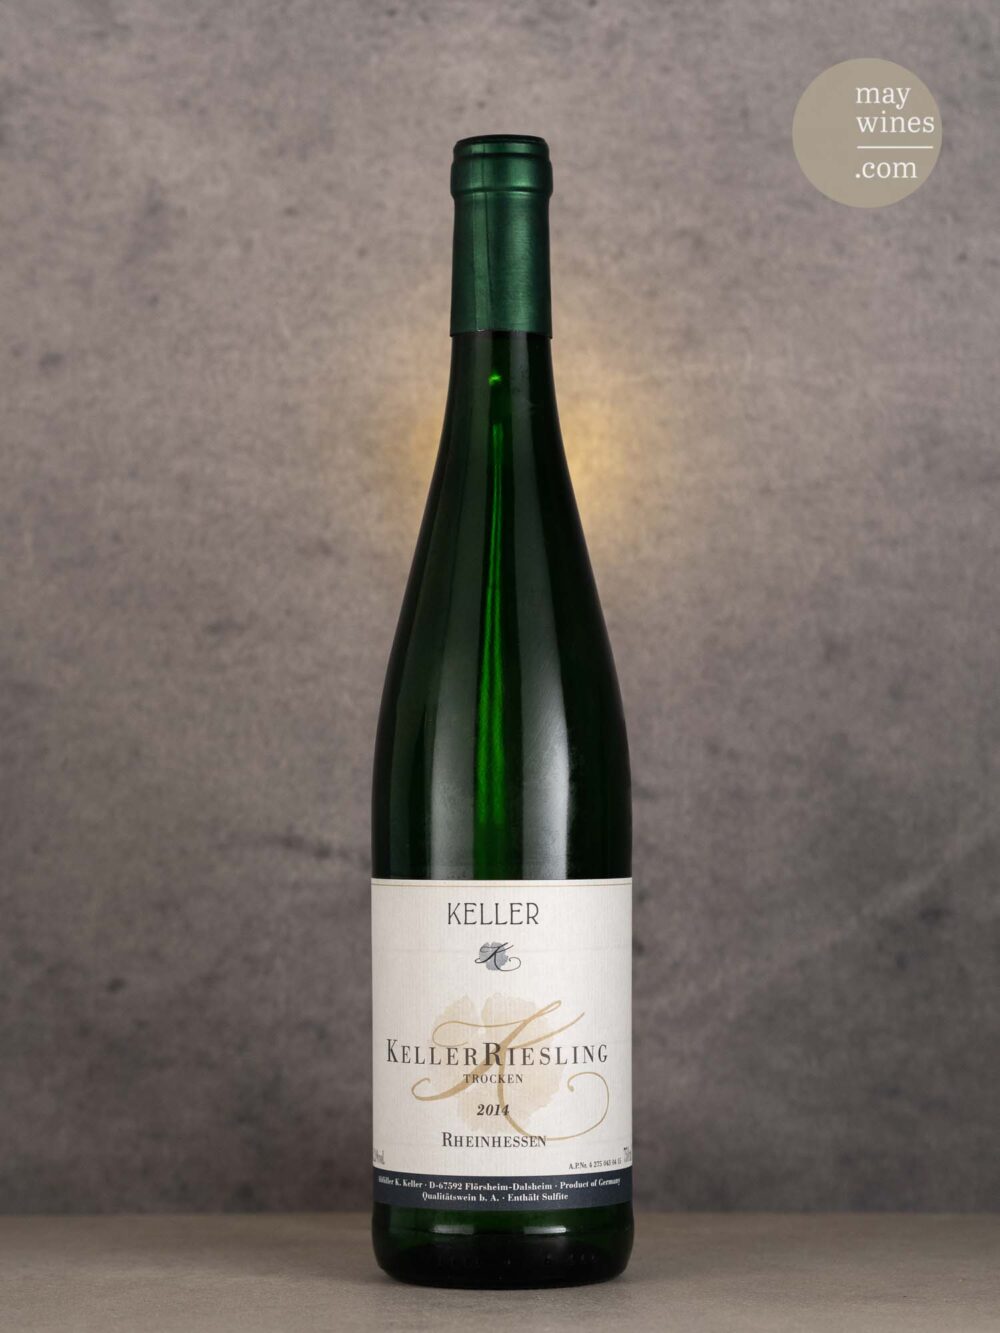 May Wines – Weißwein – 2014 Keller Riesling - Keller